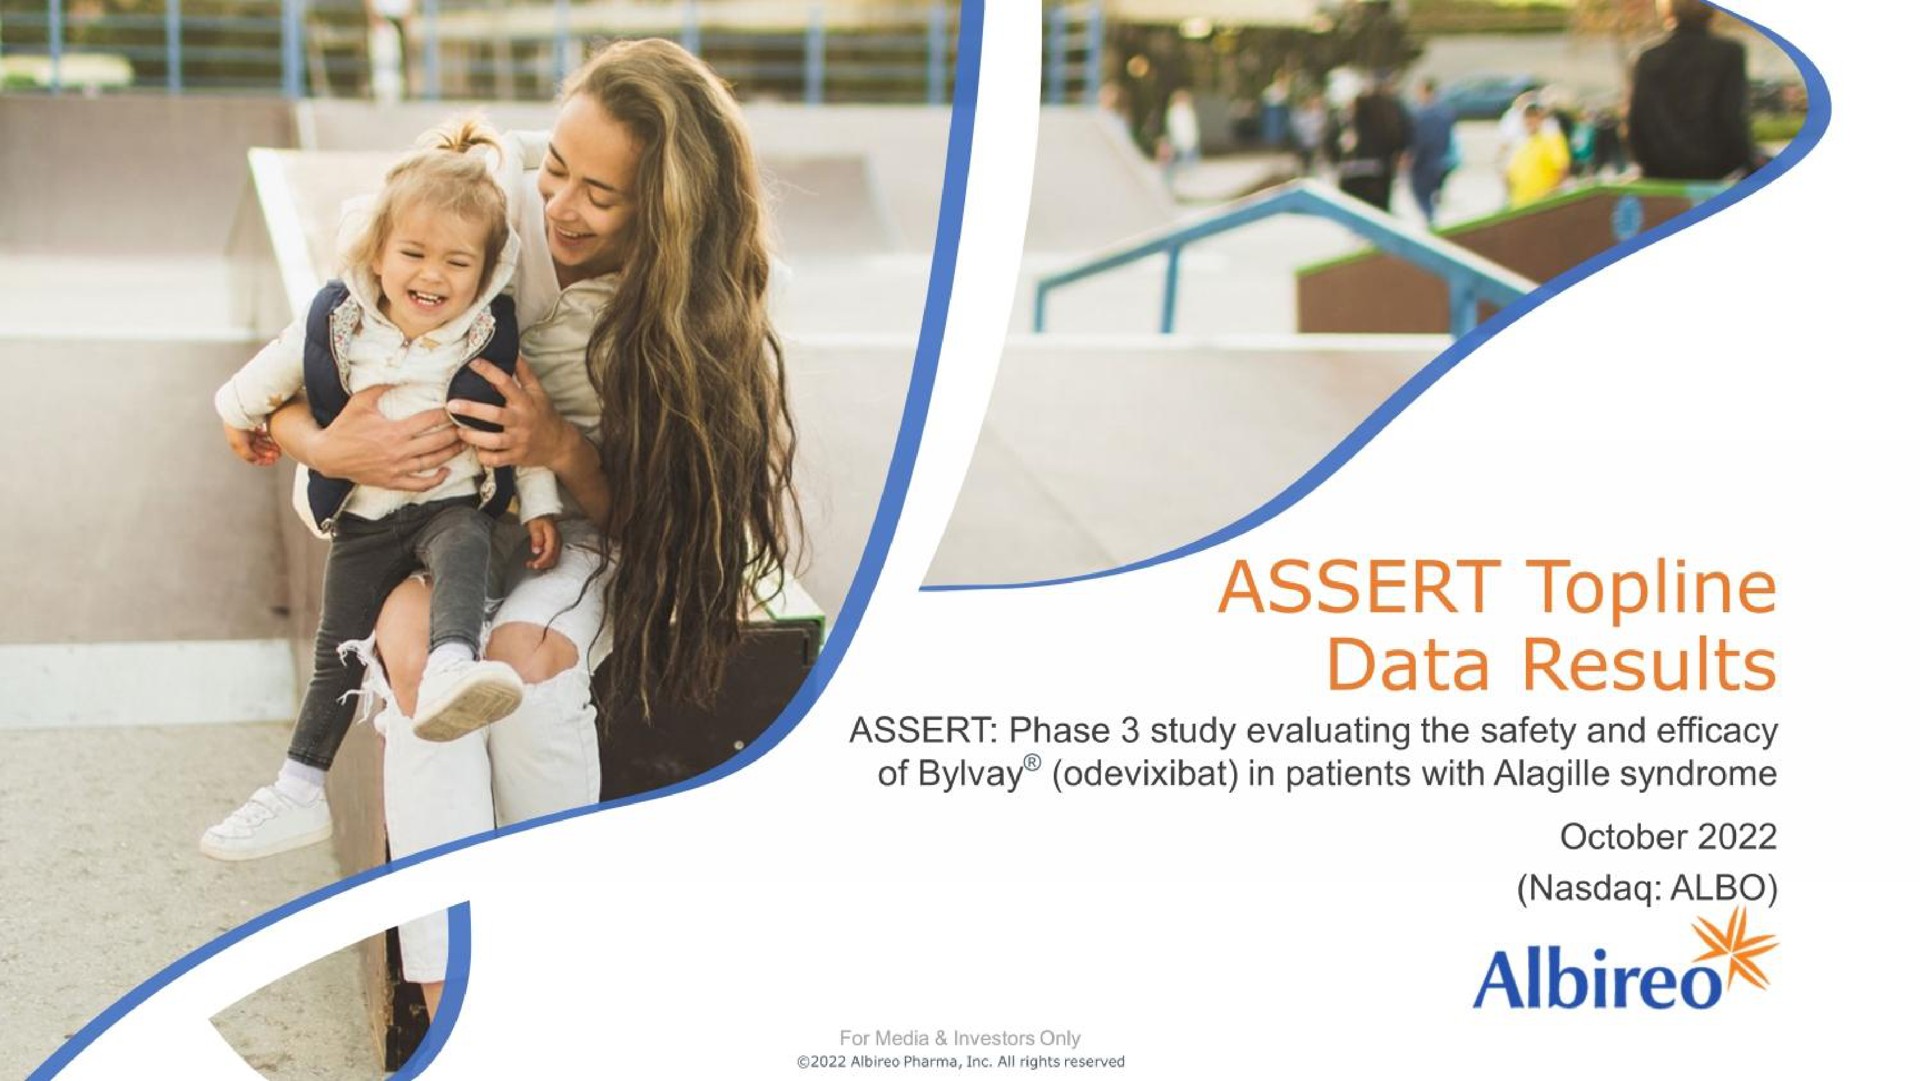 assert topline data results | Albireo Pharma